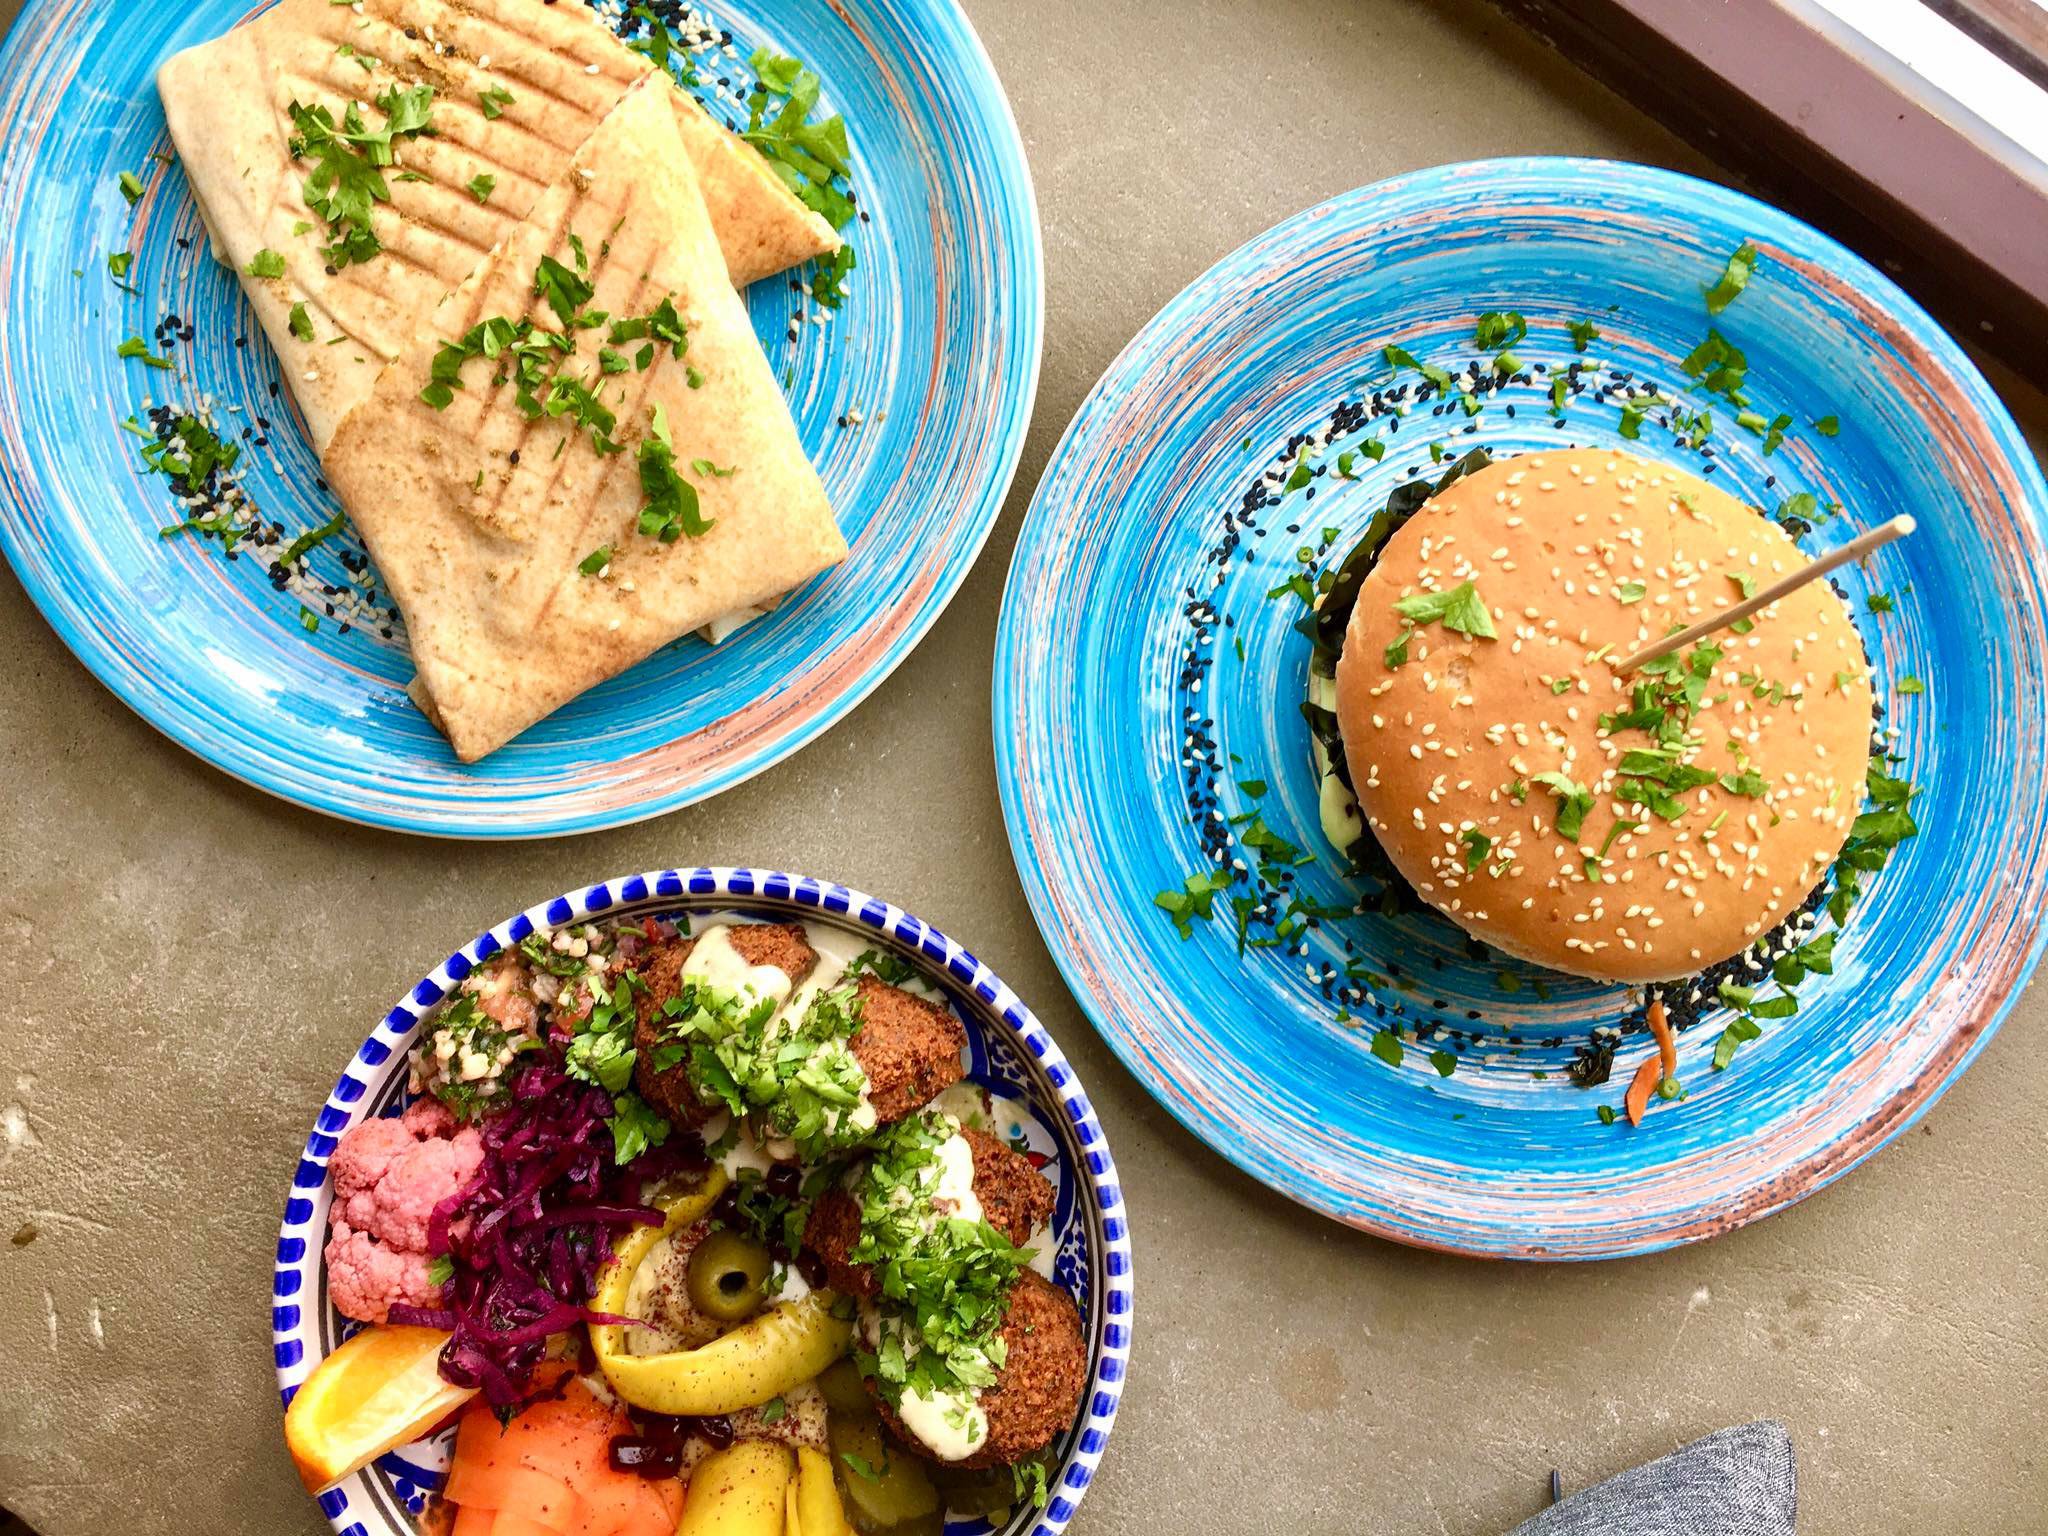 Zdjęcie zrobione z góry - widać na nim trzy talerze z wegańskim jedzeniem w restauracji Falla.